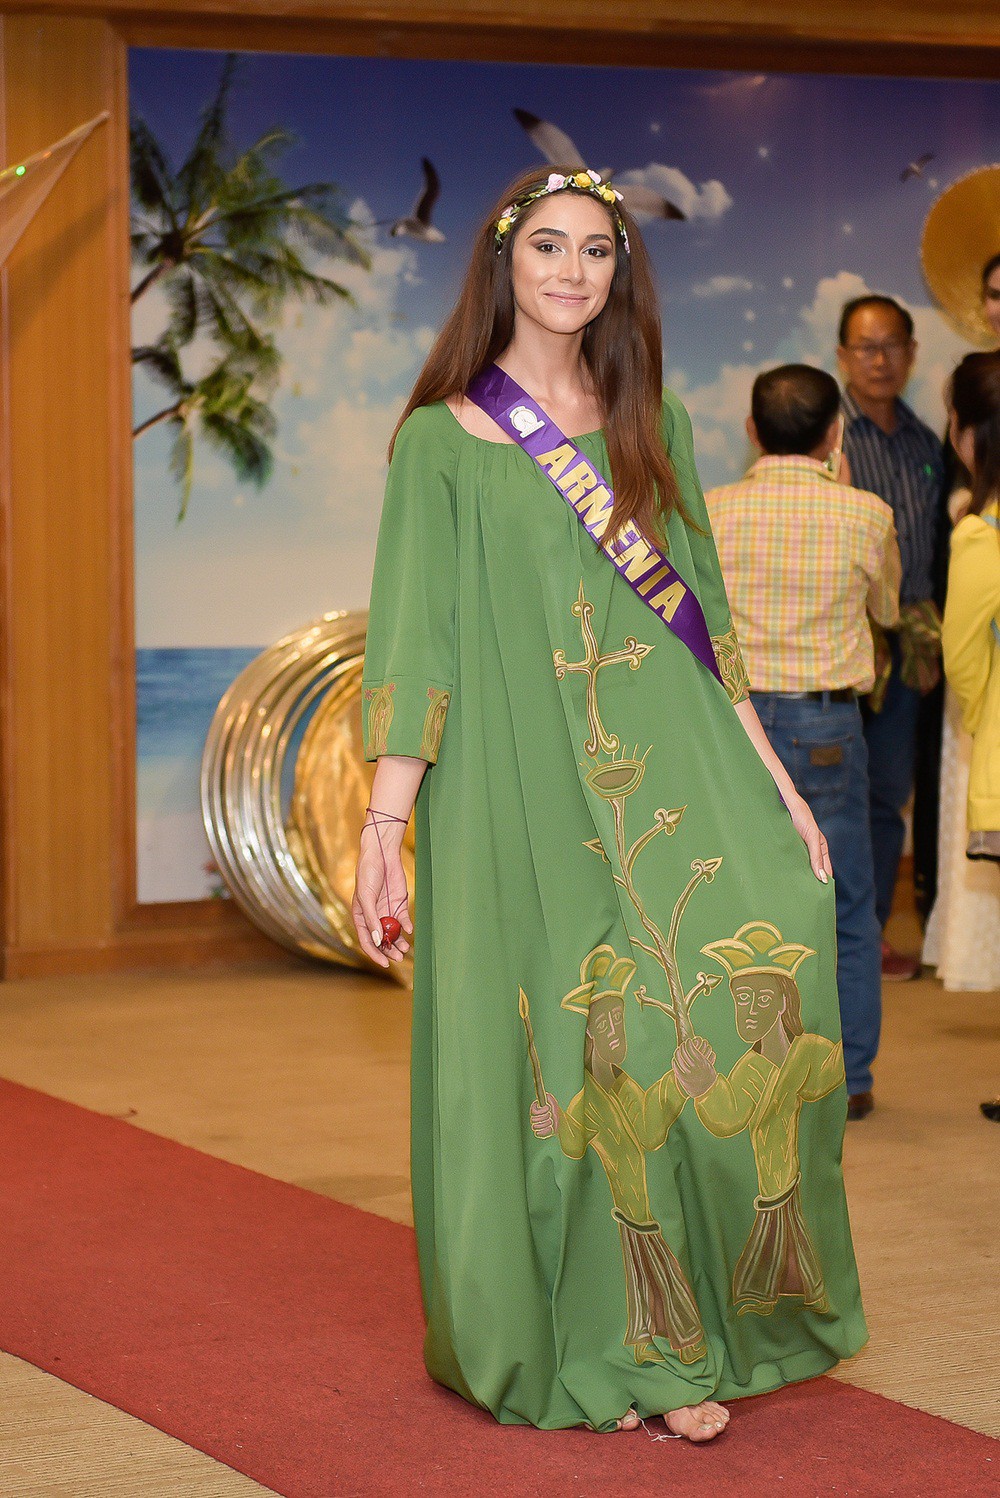 Phan Thi Mơ lọt top 10 phần thi trang phục của Hoa hậu Đại sứ Du lịch Thế giới 2018 - Ảnh 9.